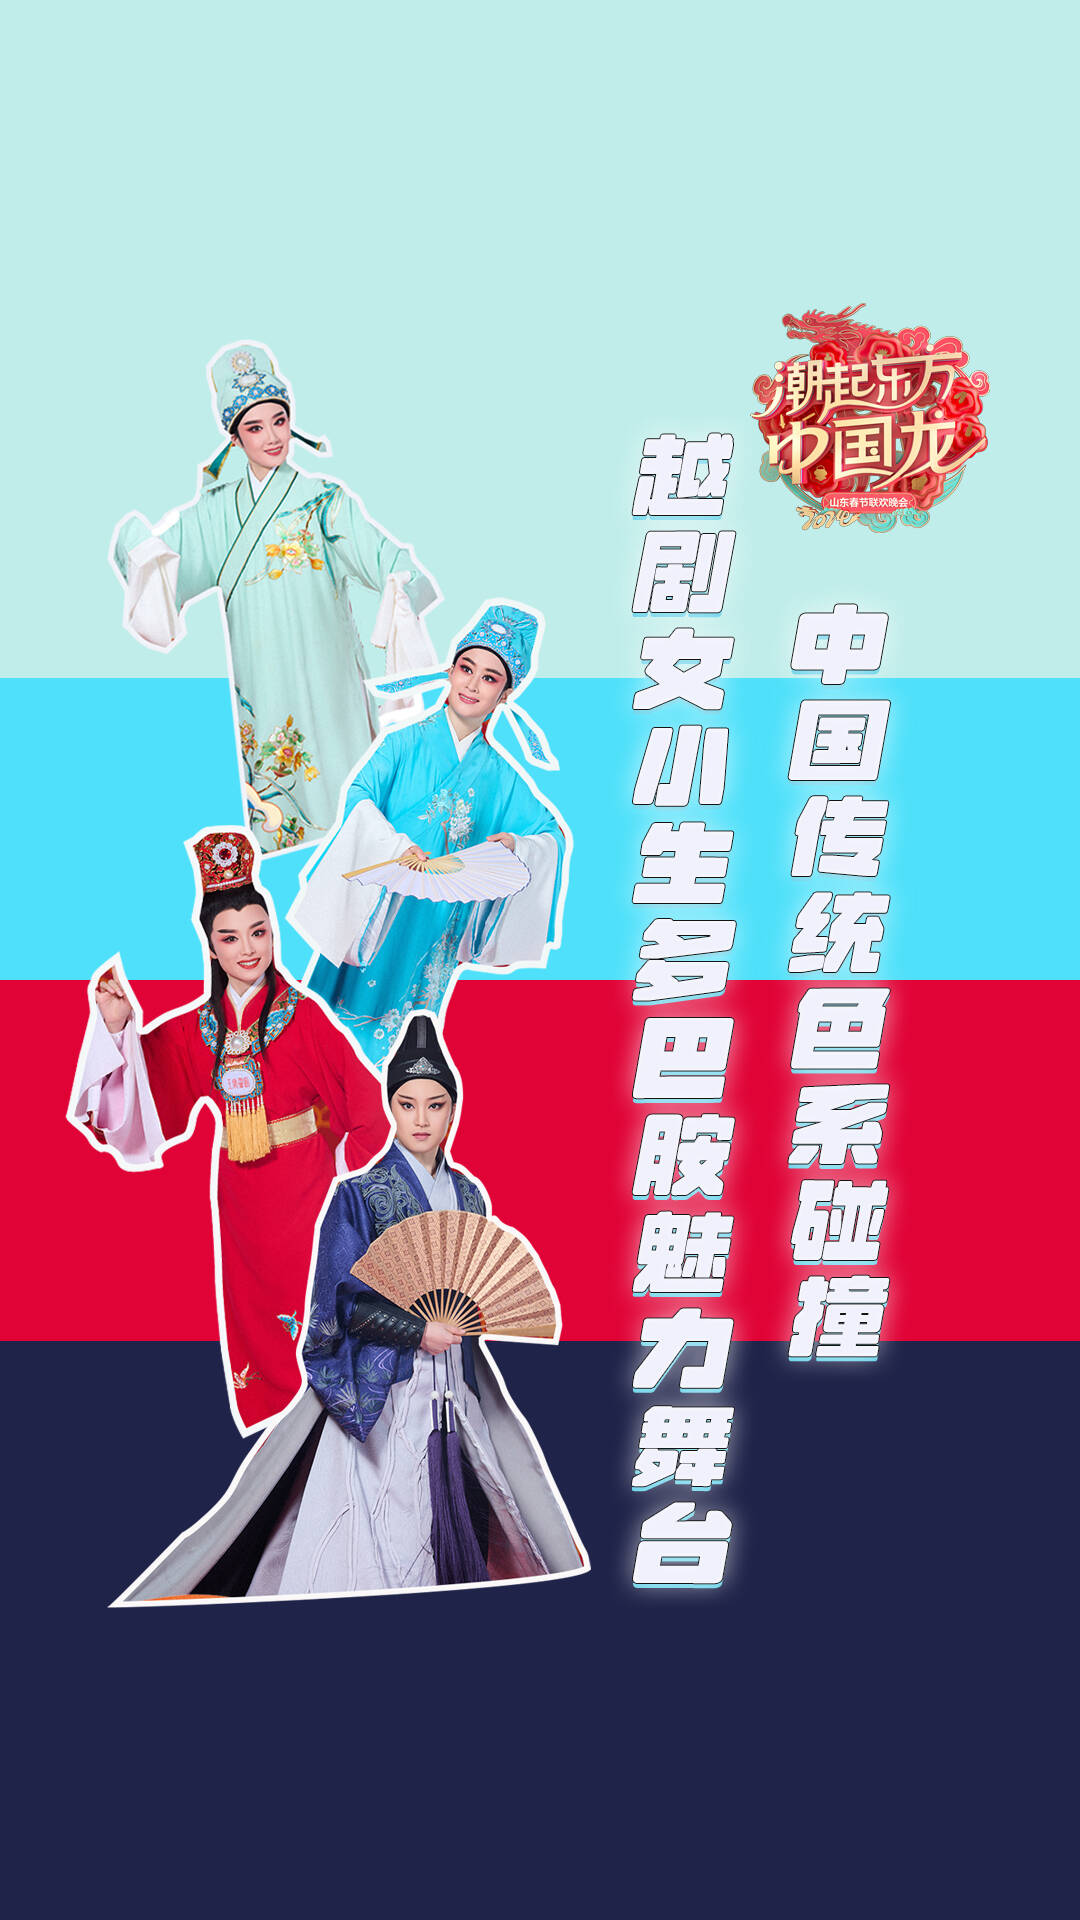 当中国传统色碰撞经典戏曲男友力角色